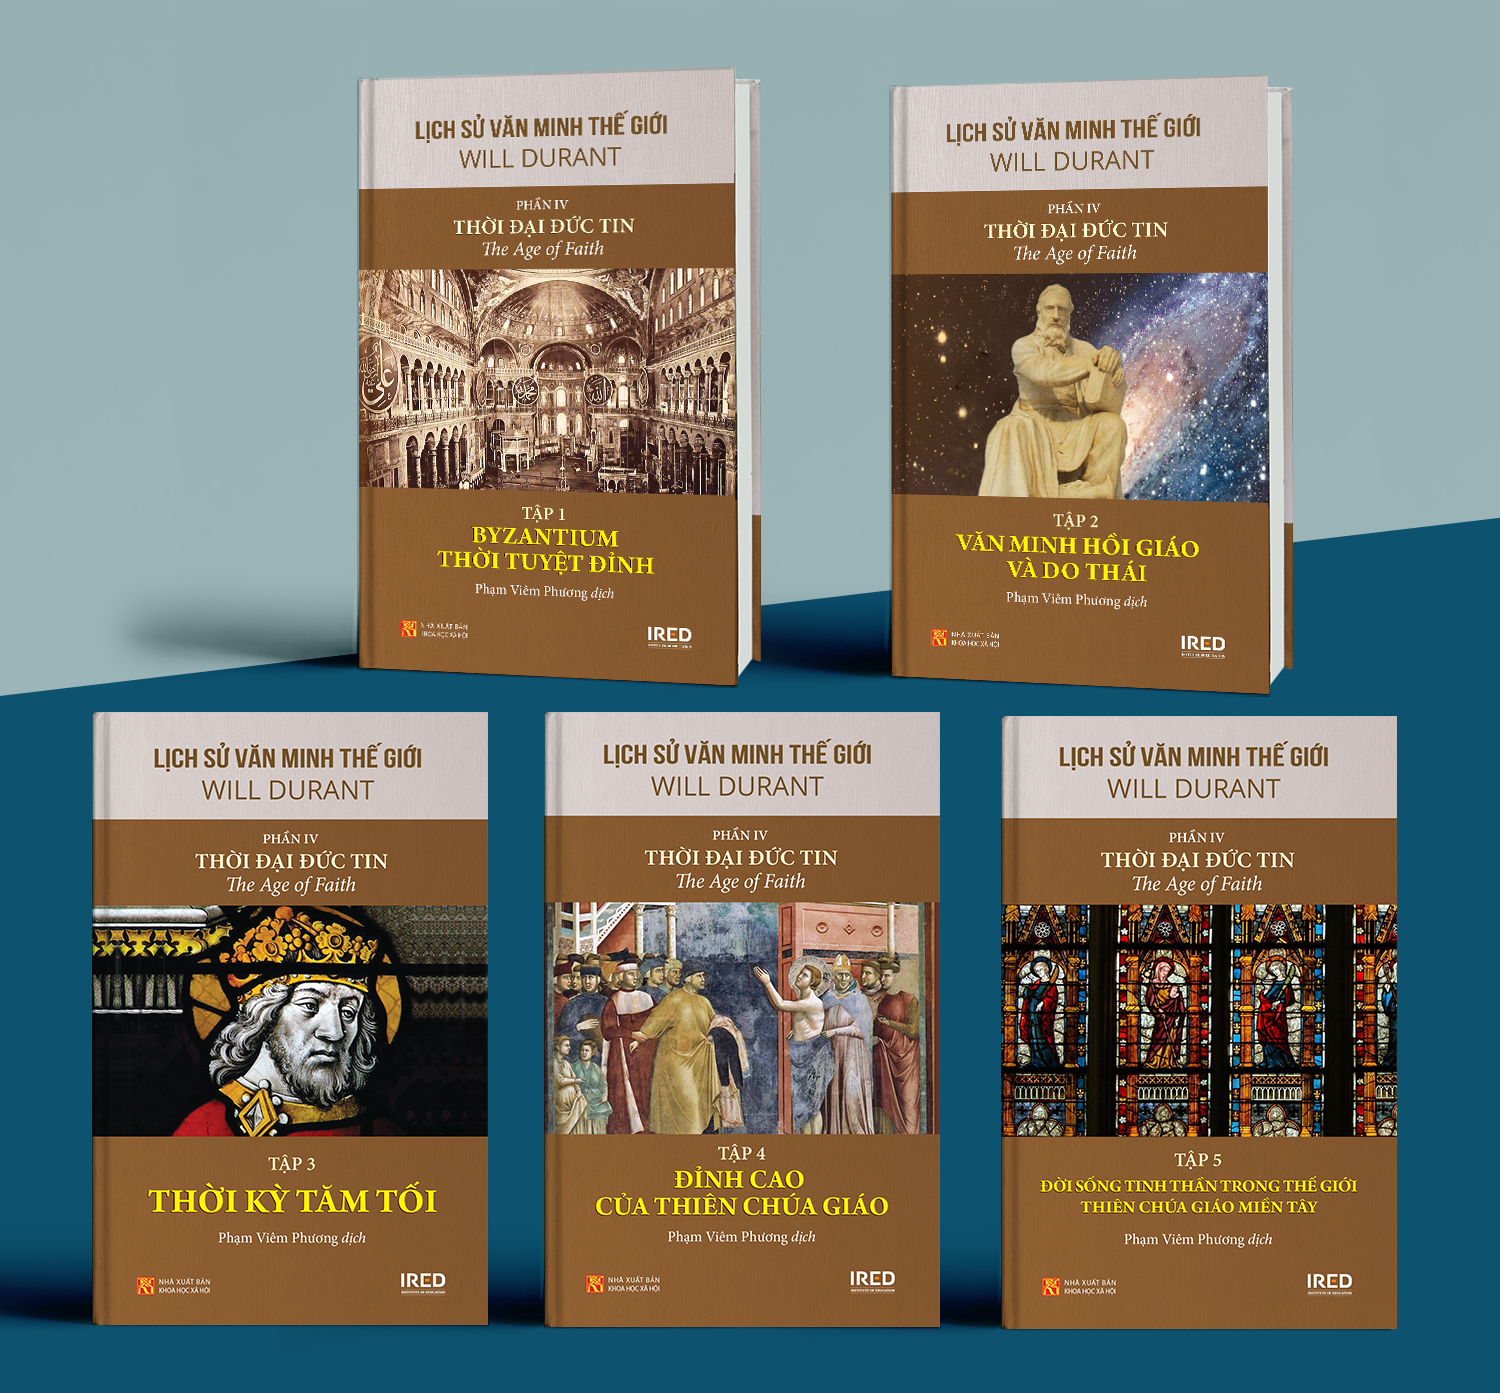 Sách IRED Books - Lịch sử văn minh thế giới phần 4: Thời đại đức tin - The Age of Faith (trọn bộ 5 tập) - Will Durant